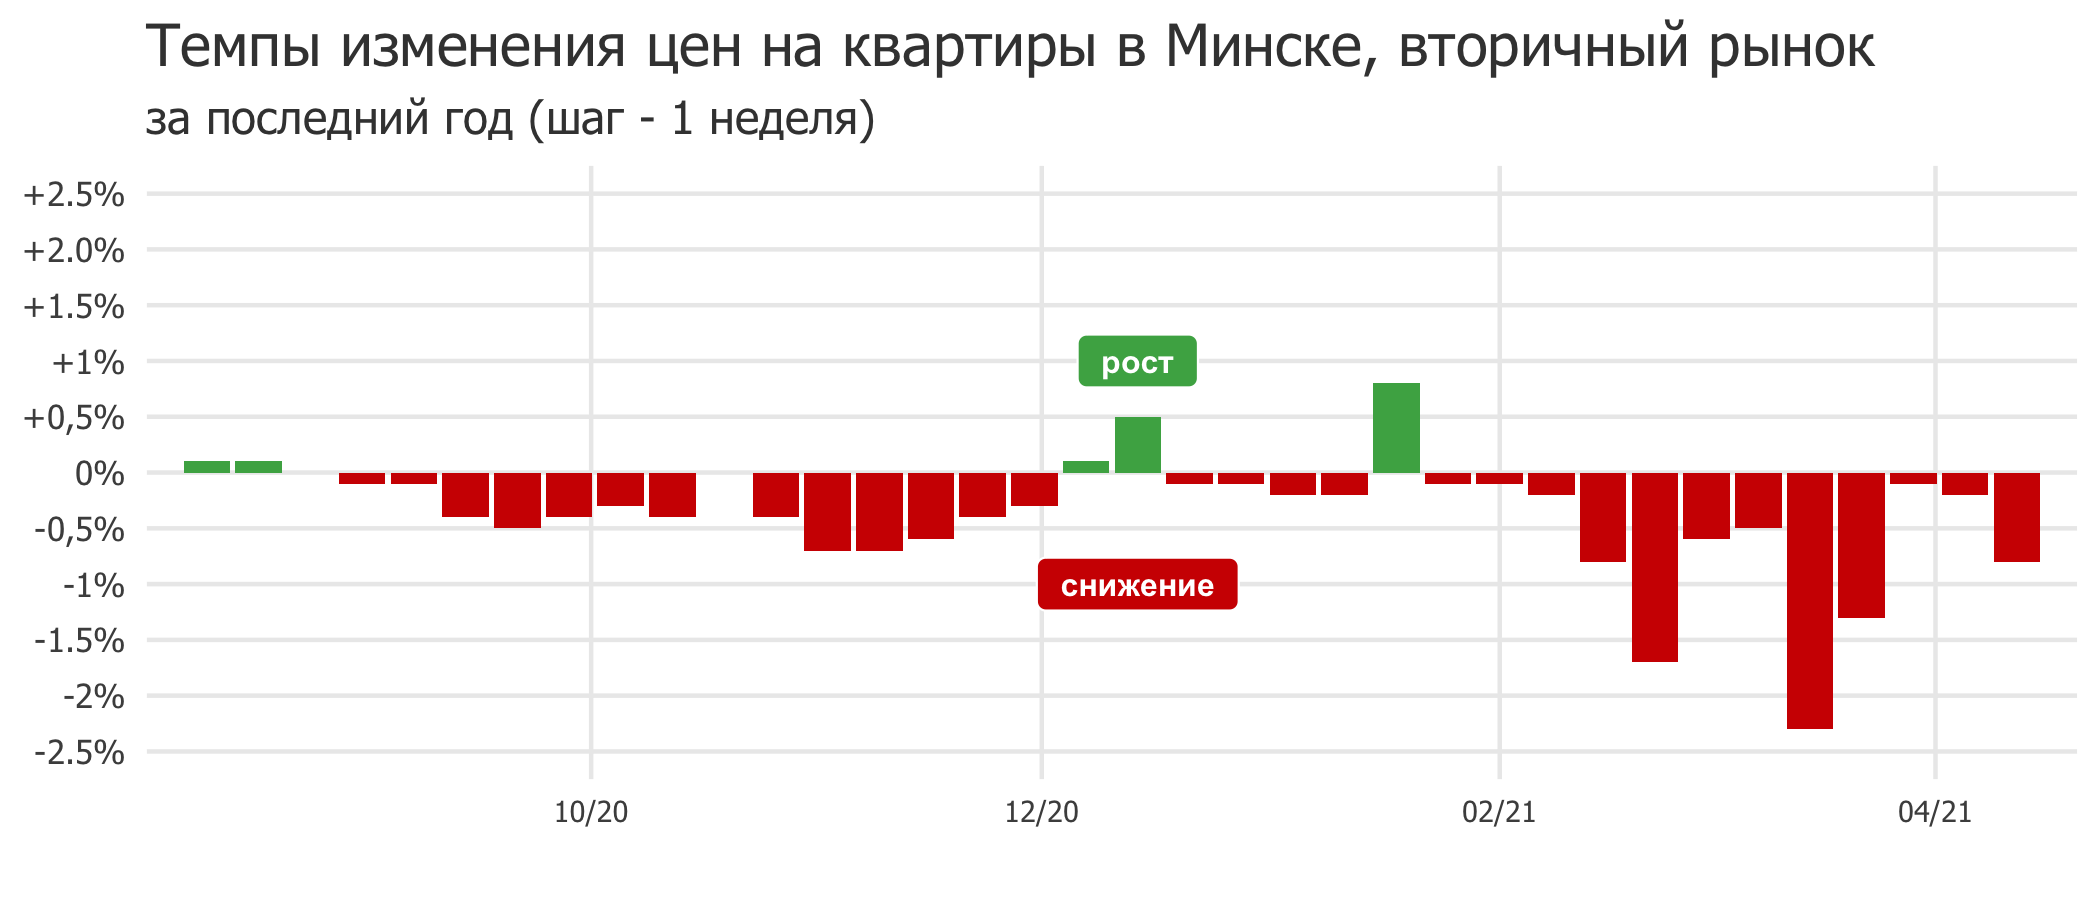 Мониторинг цен предложения квартир в Минске за 5-12 апреля 2021 года